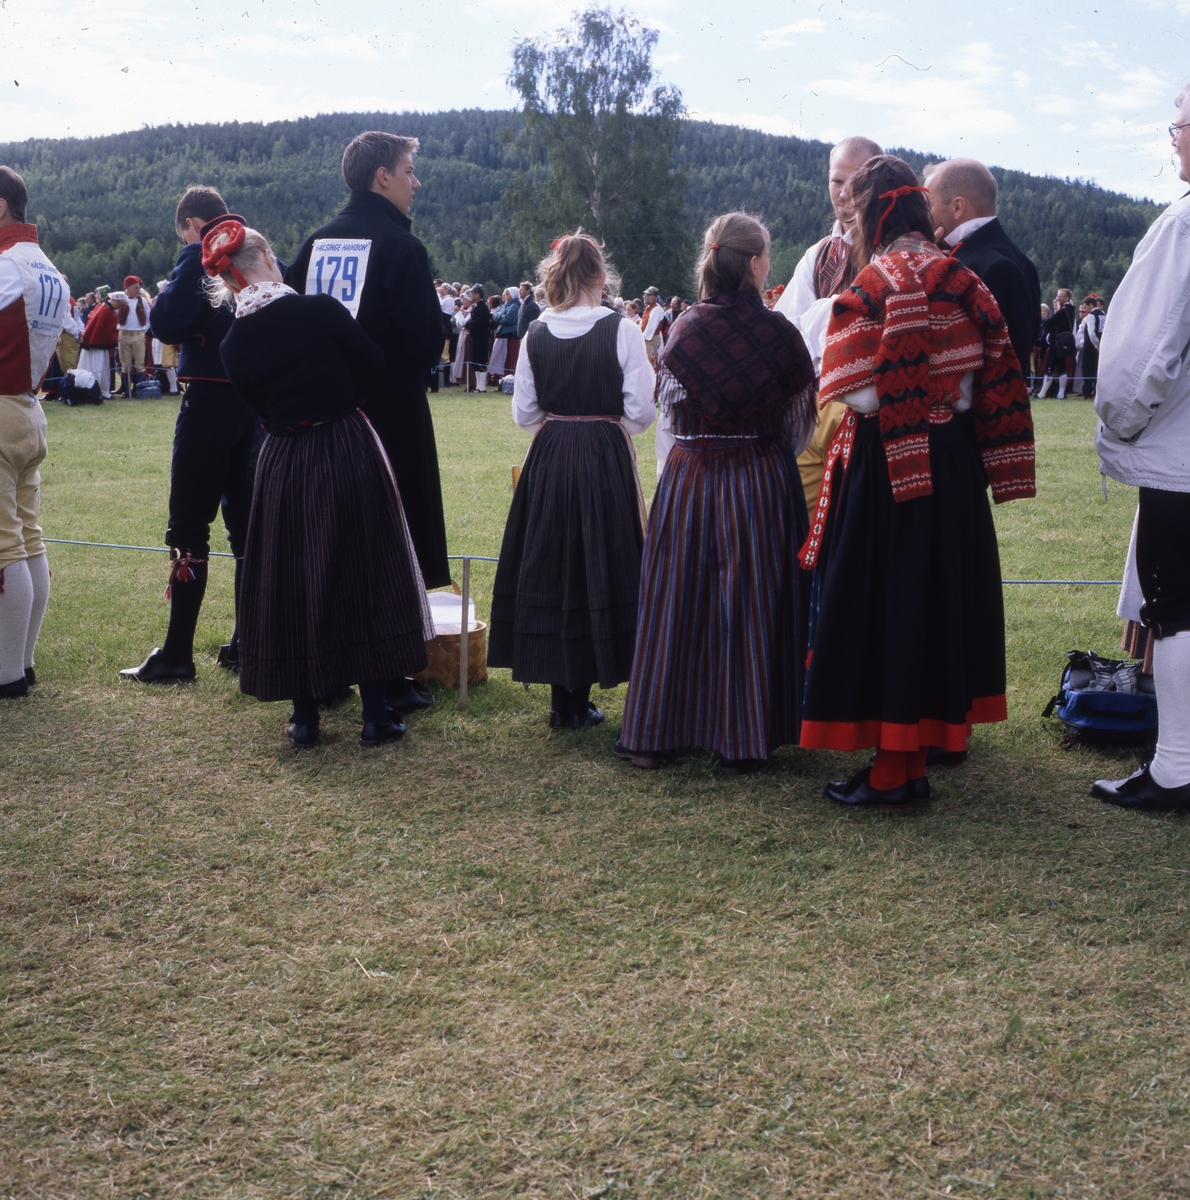 Hälsingehambon, Hårga 8 juli 2000. Dansare klädda i folkdräkt med nummerlapp på ryggen står och samtalar.